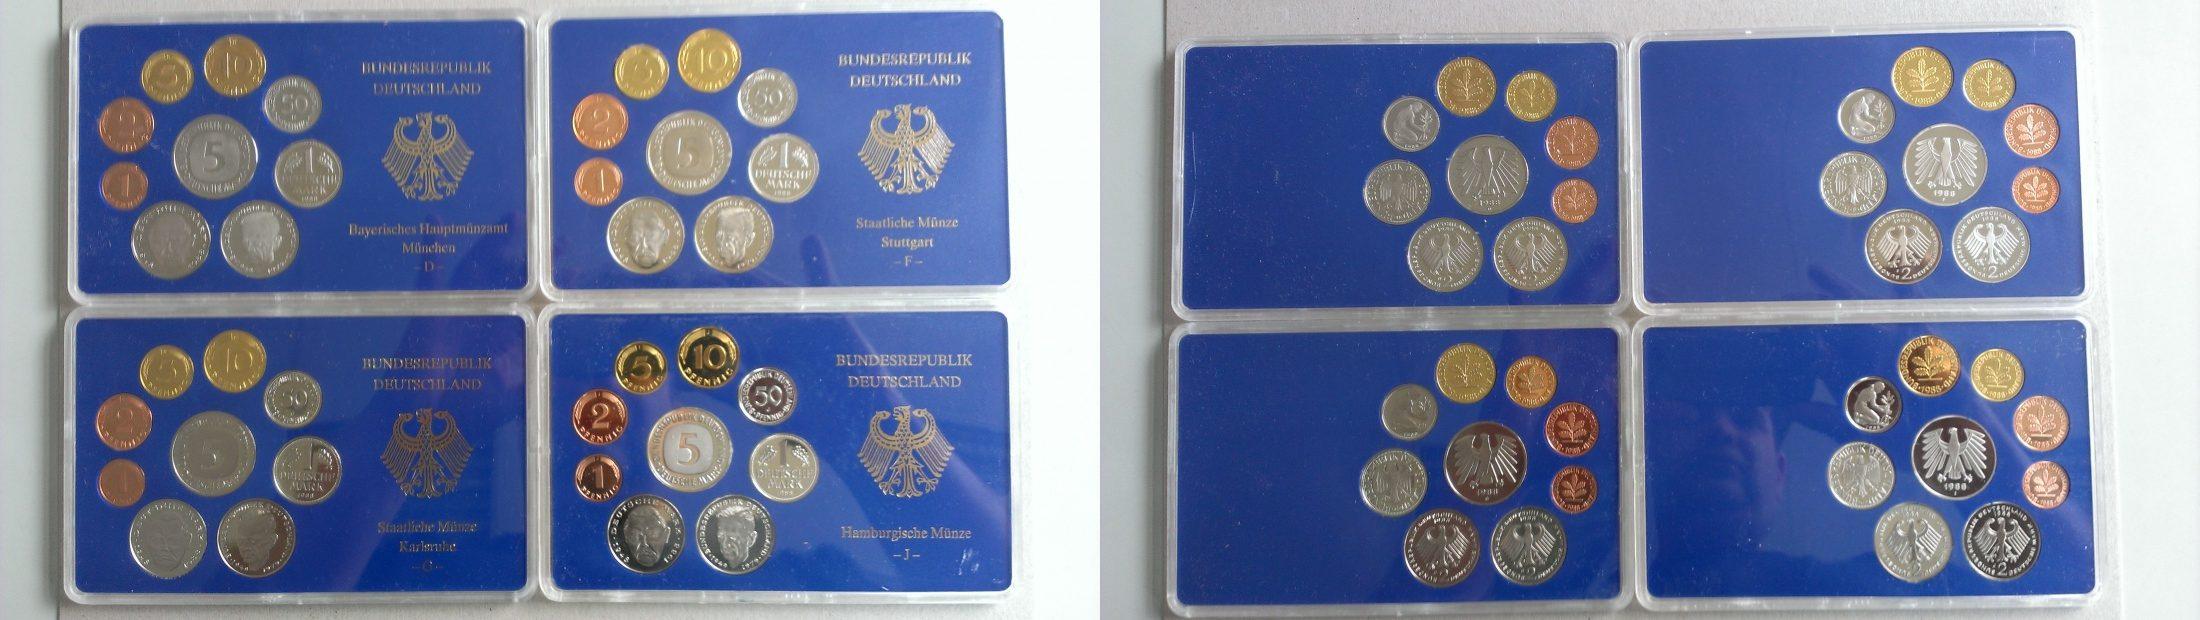 Foto Bundesrepublik Deutschland Jahreskursmünzensatz 1988